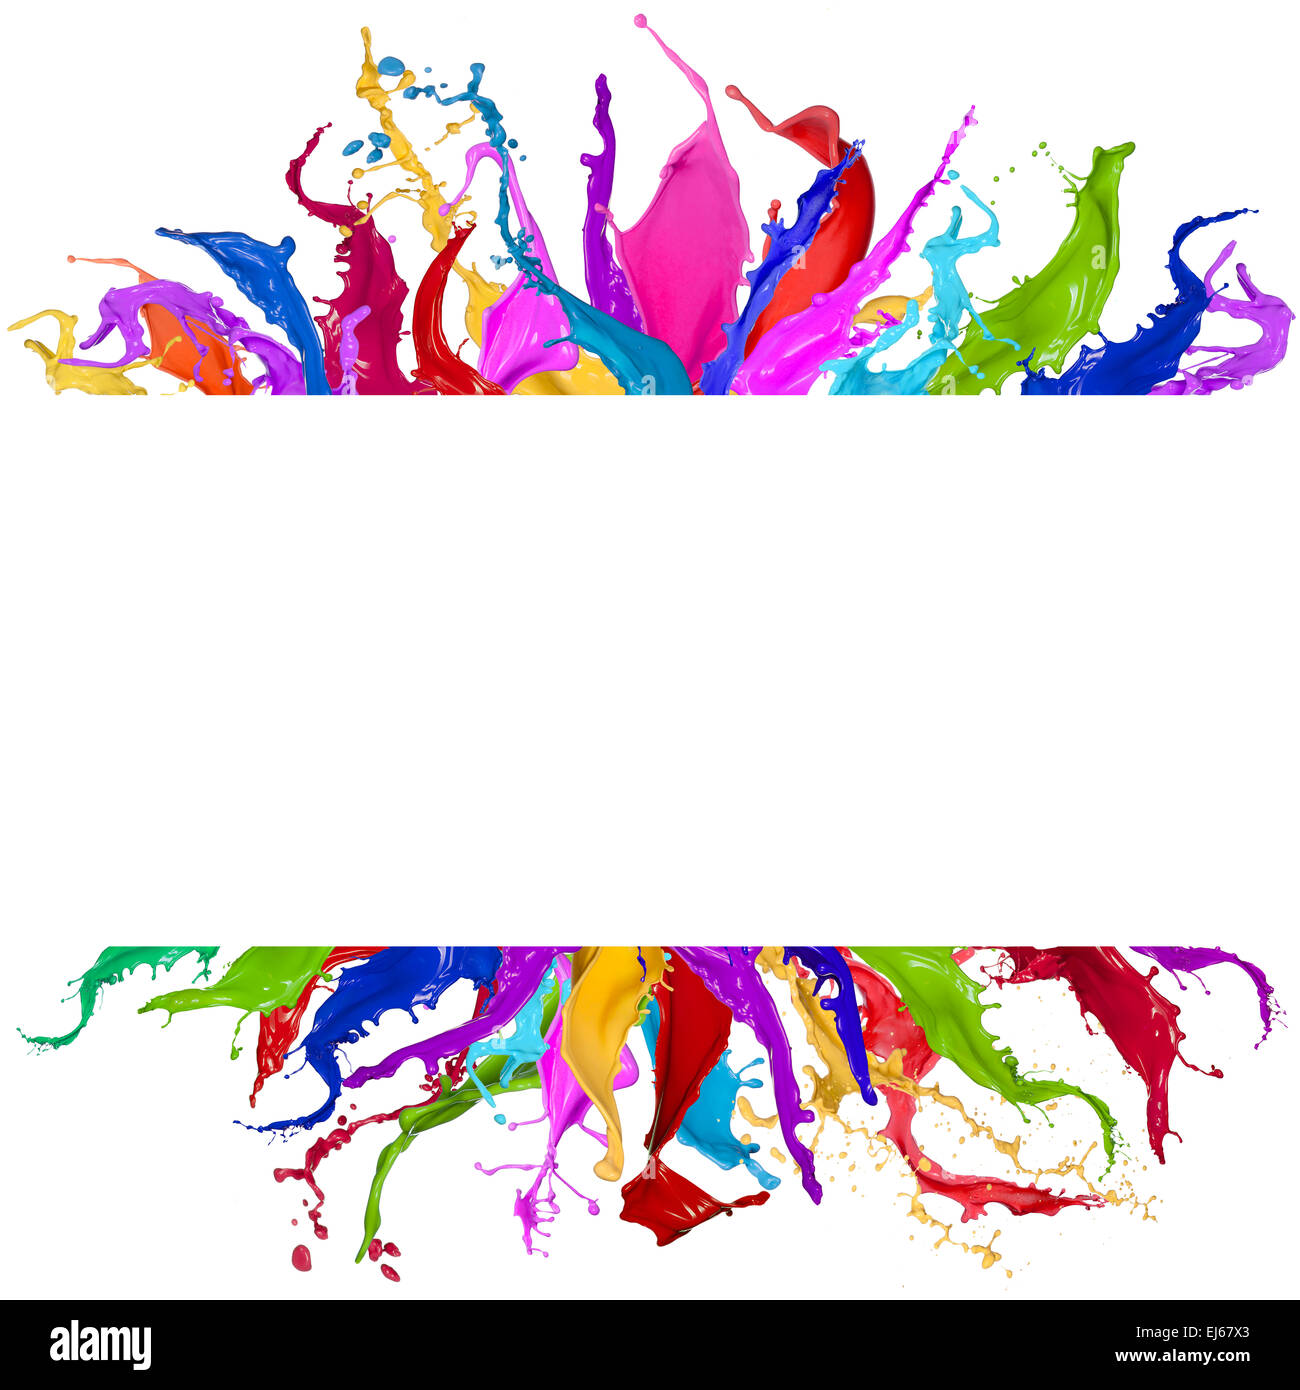 Farbige Spritzer in abstrakter Form auf weißem Hintergrund Stockfoto